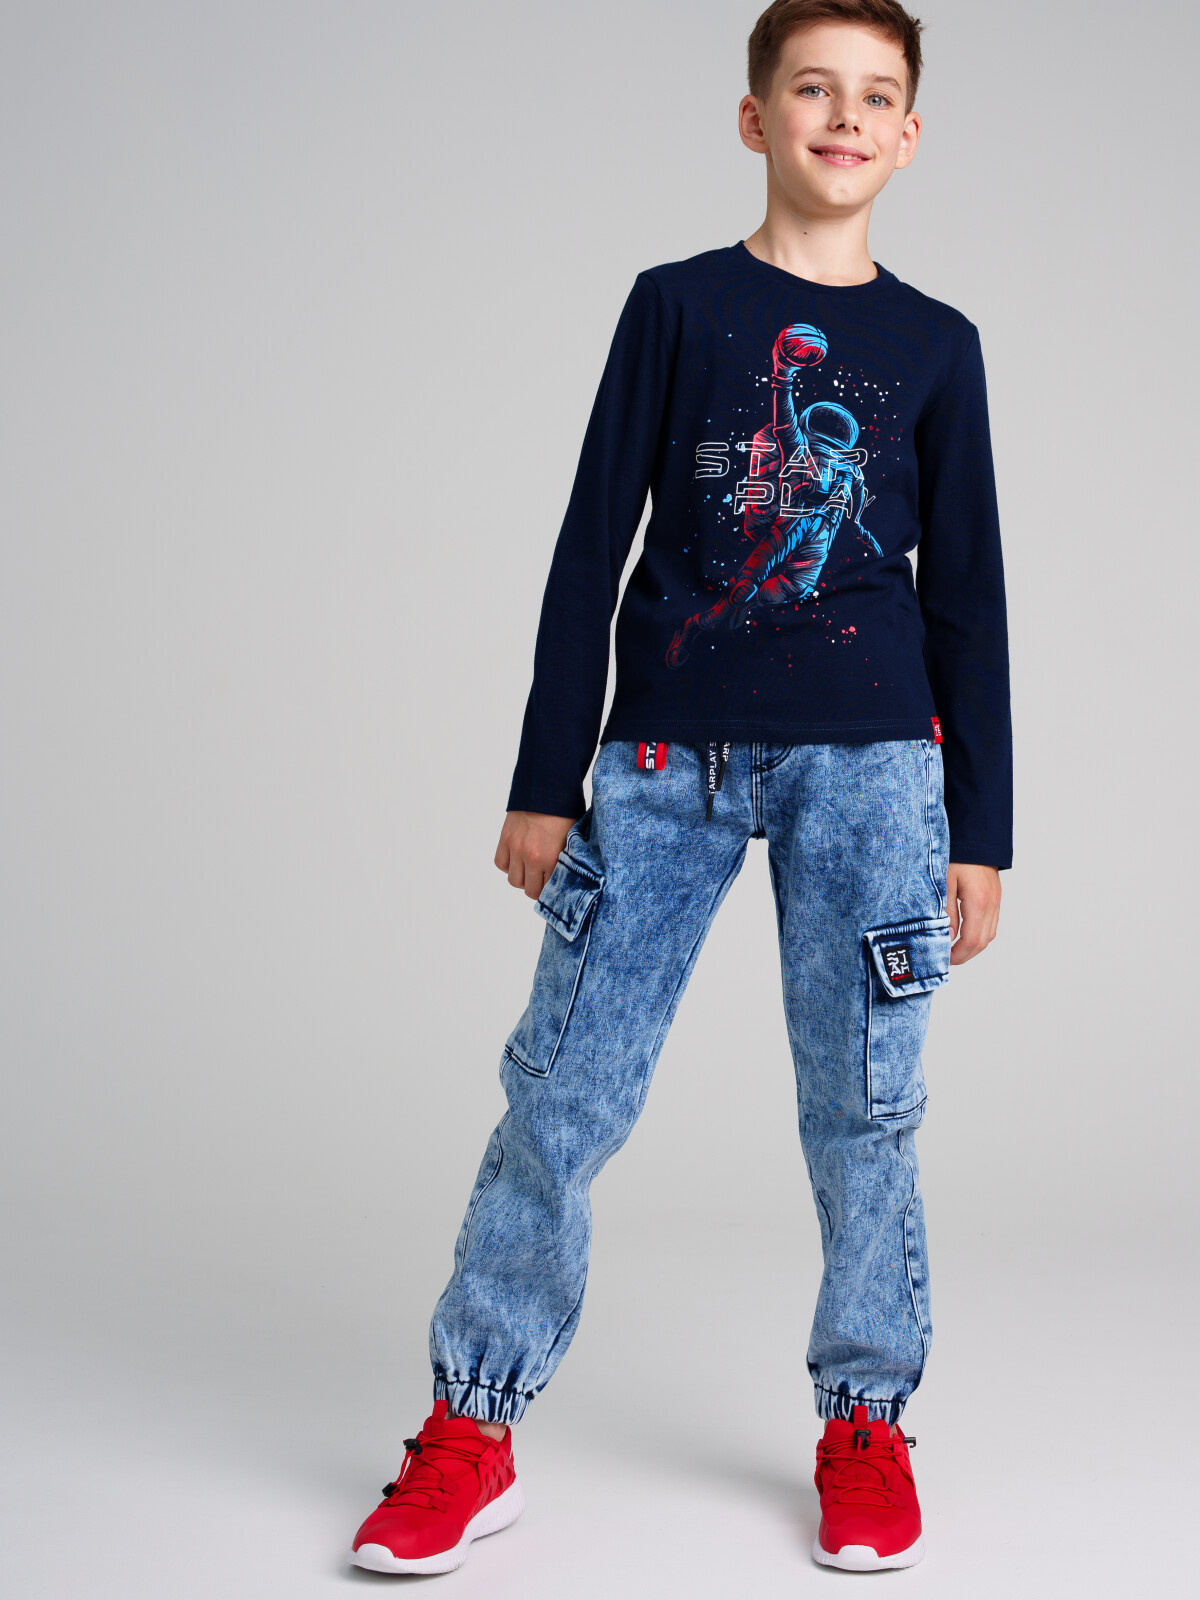 Брюки текстильные джинсовые утепленные флисом для мальчиков PlayToday, тёмно-синий, 158